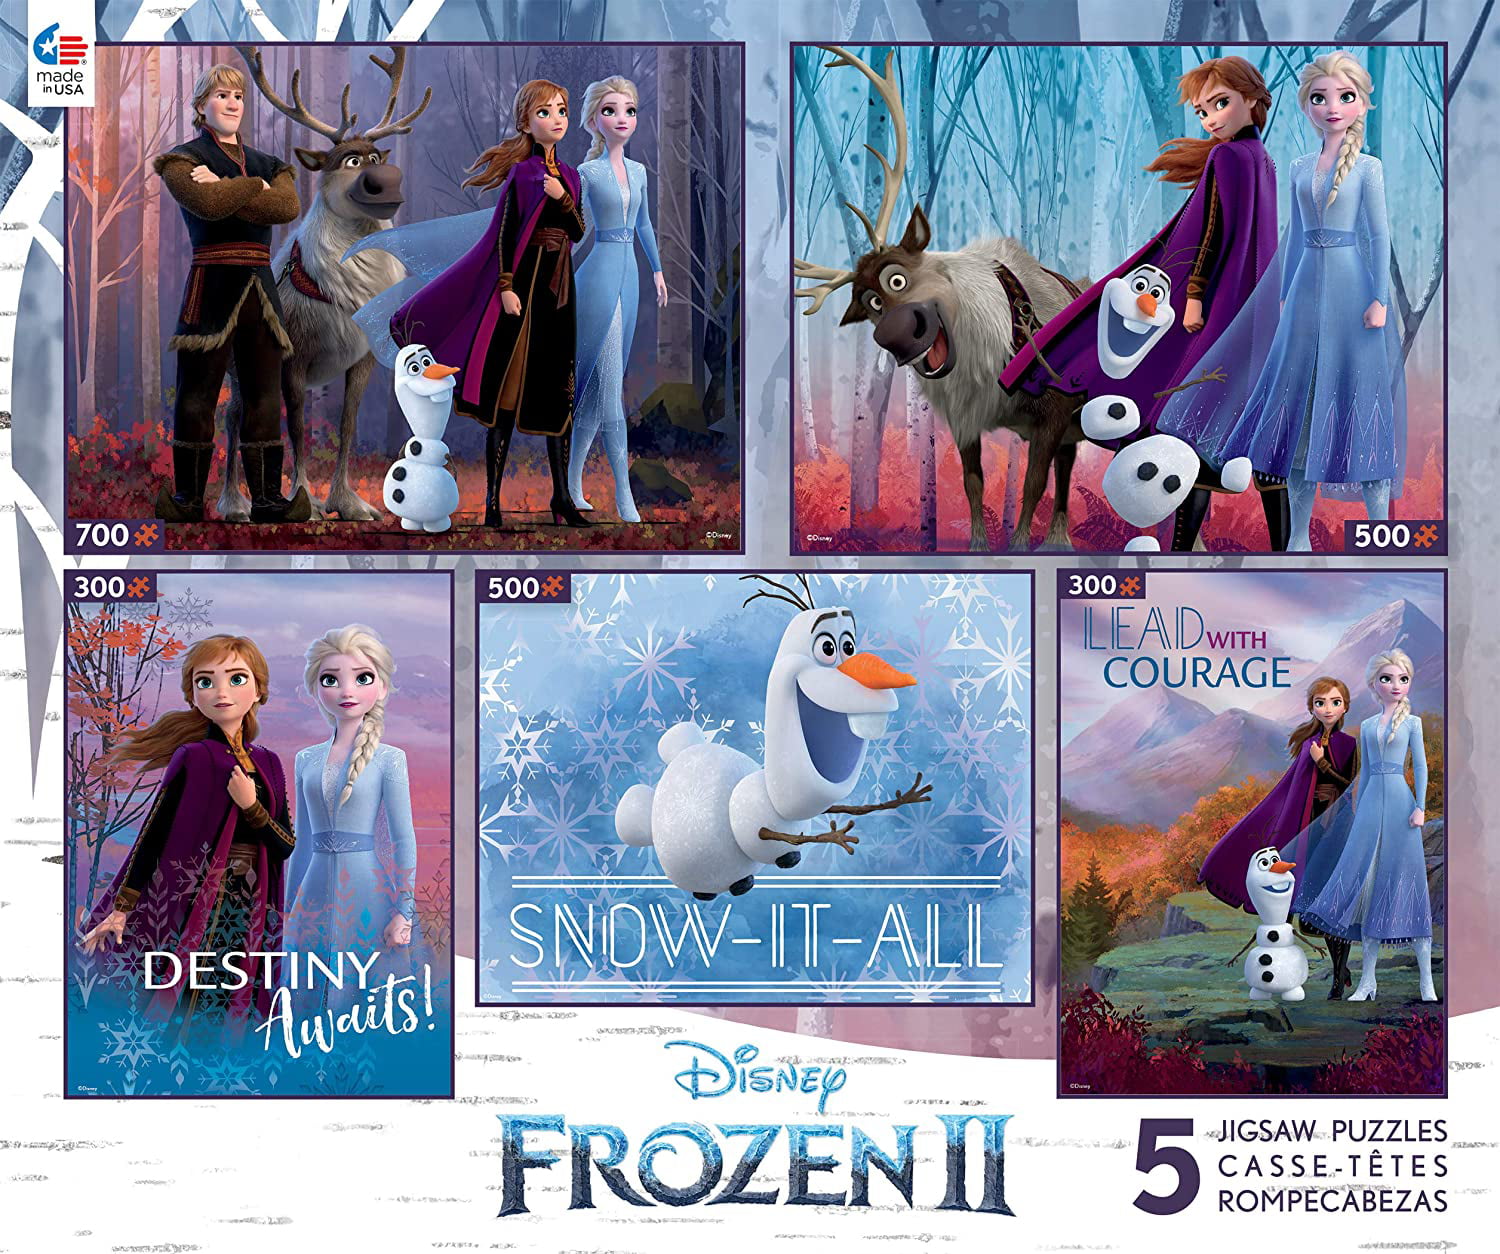 Details about   Disney Frozen II Elsa 500 Piece Puzzle 464 